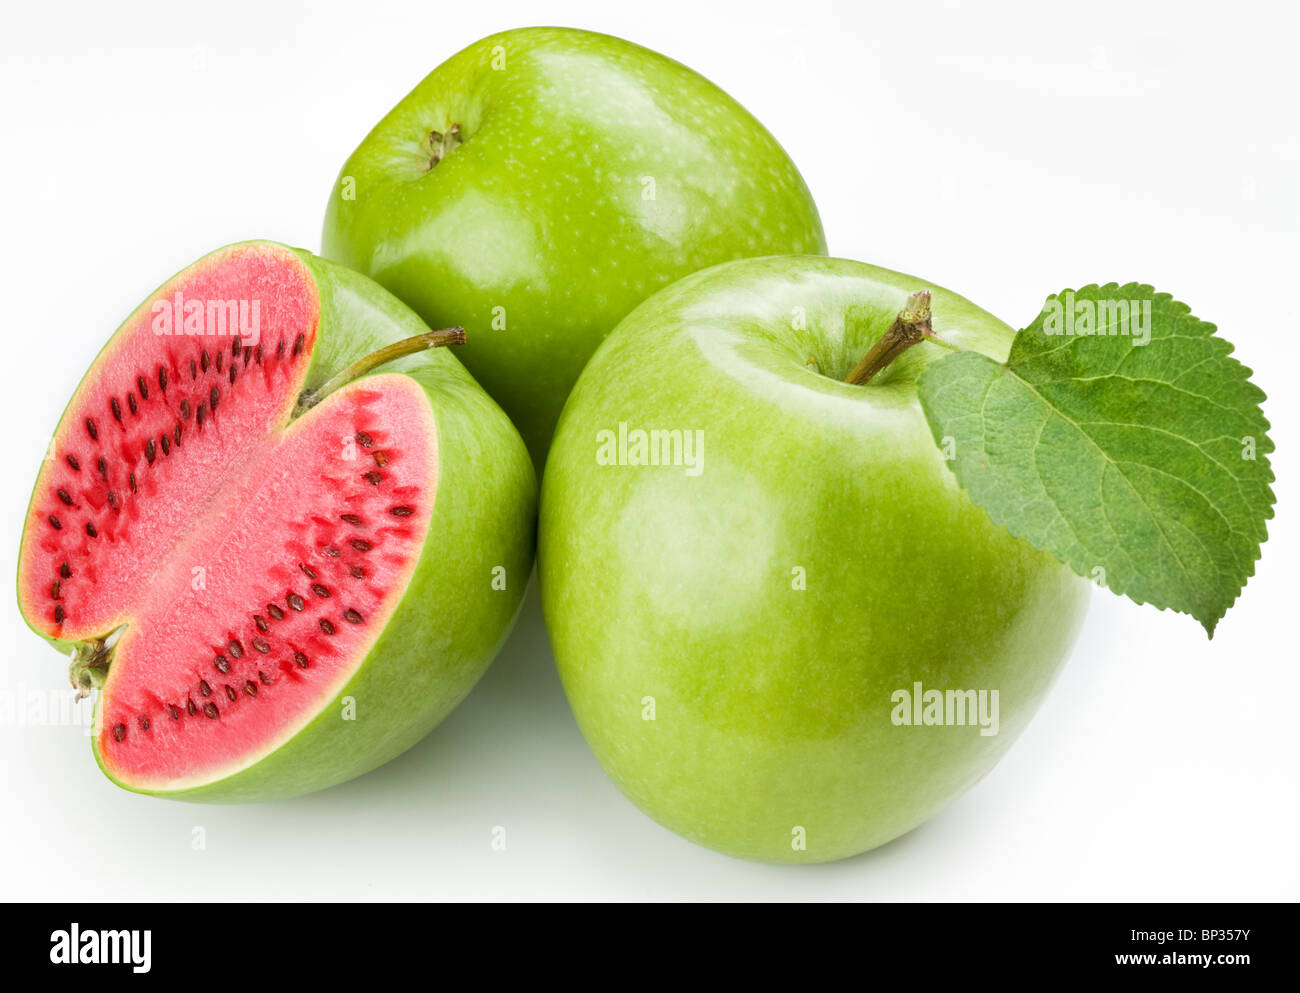 Fleisch-Wassermelone, grünen Apfel schneiden. Produkt der Gentechnik. Computer-Montage. Stockfoto